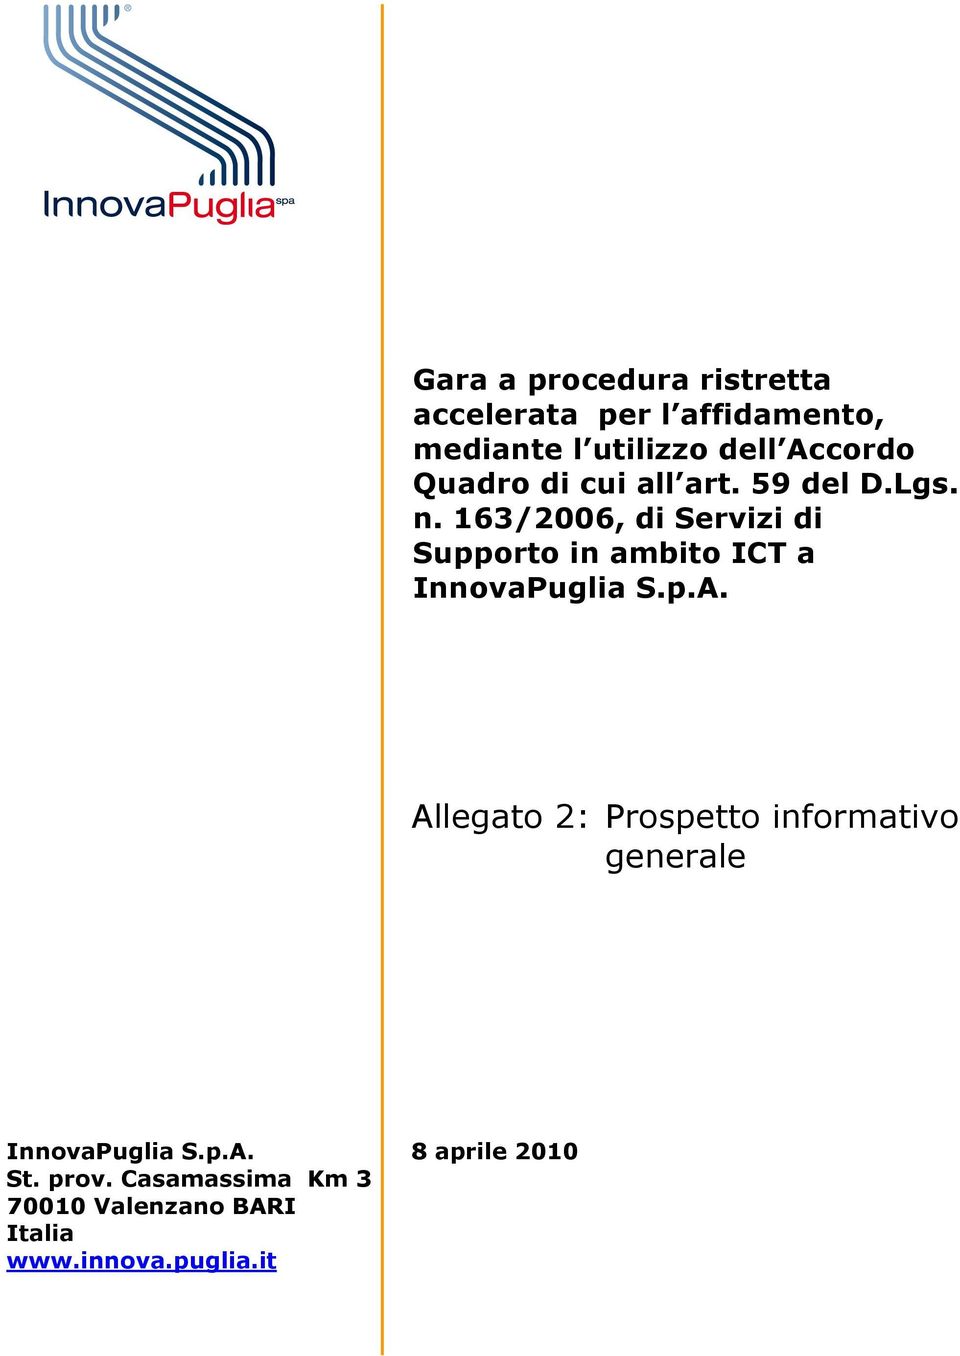 163/2006, di Servizi di Supporto in ambito ICT a InnovaPuglia S.p.A.